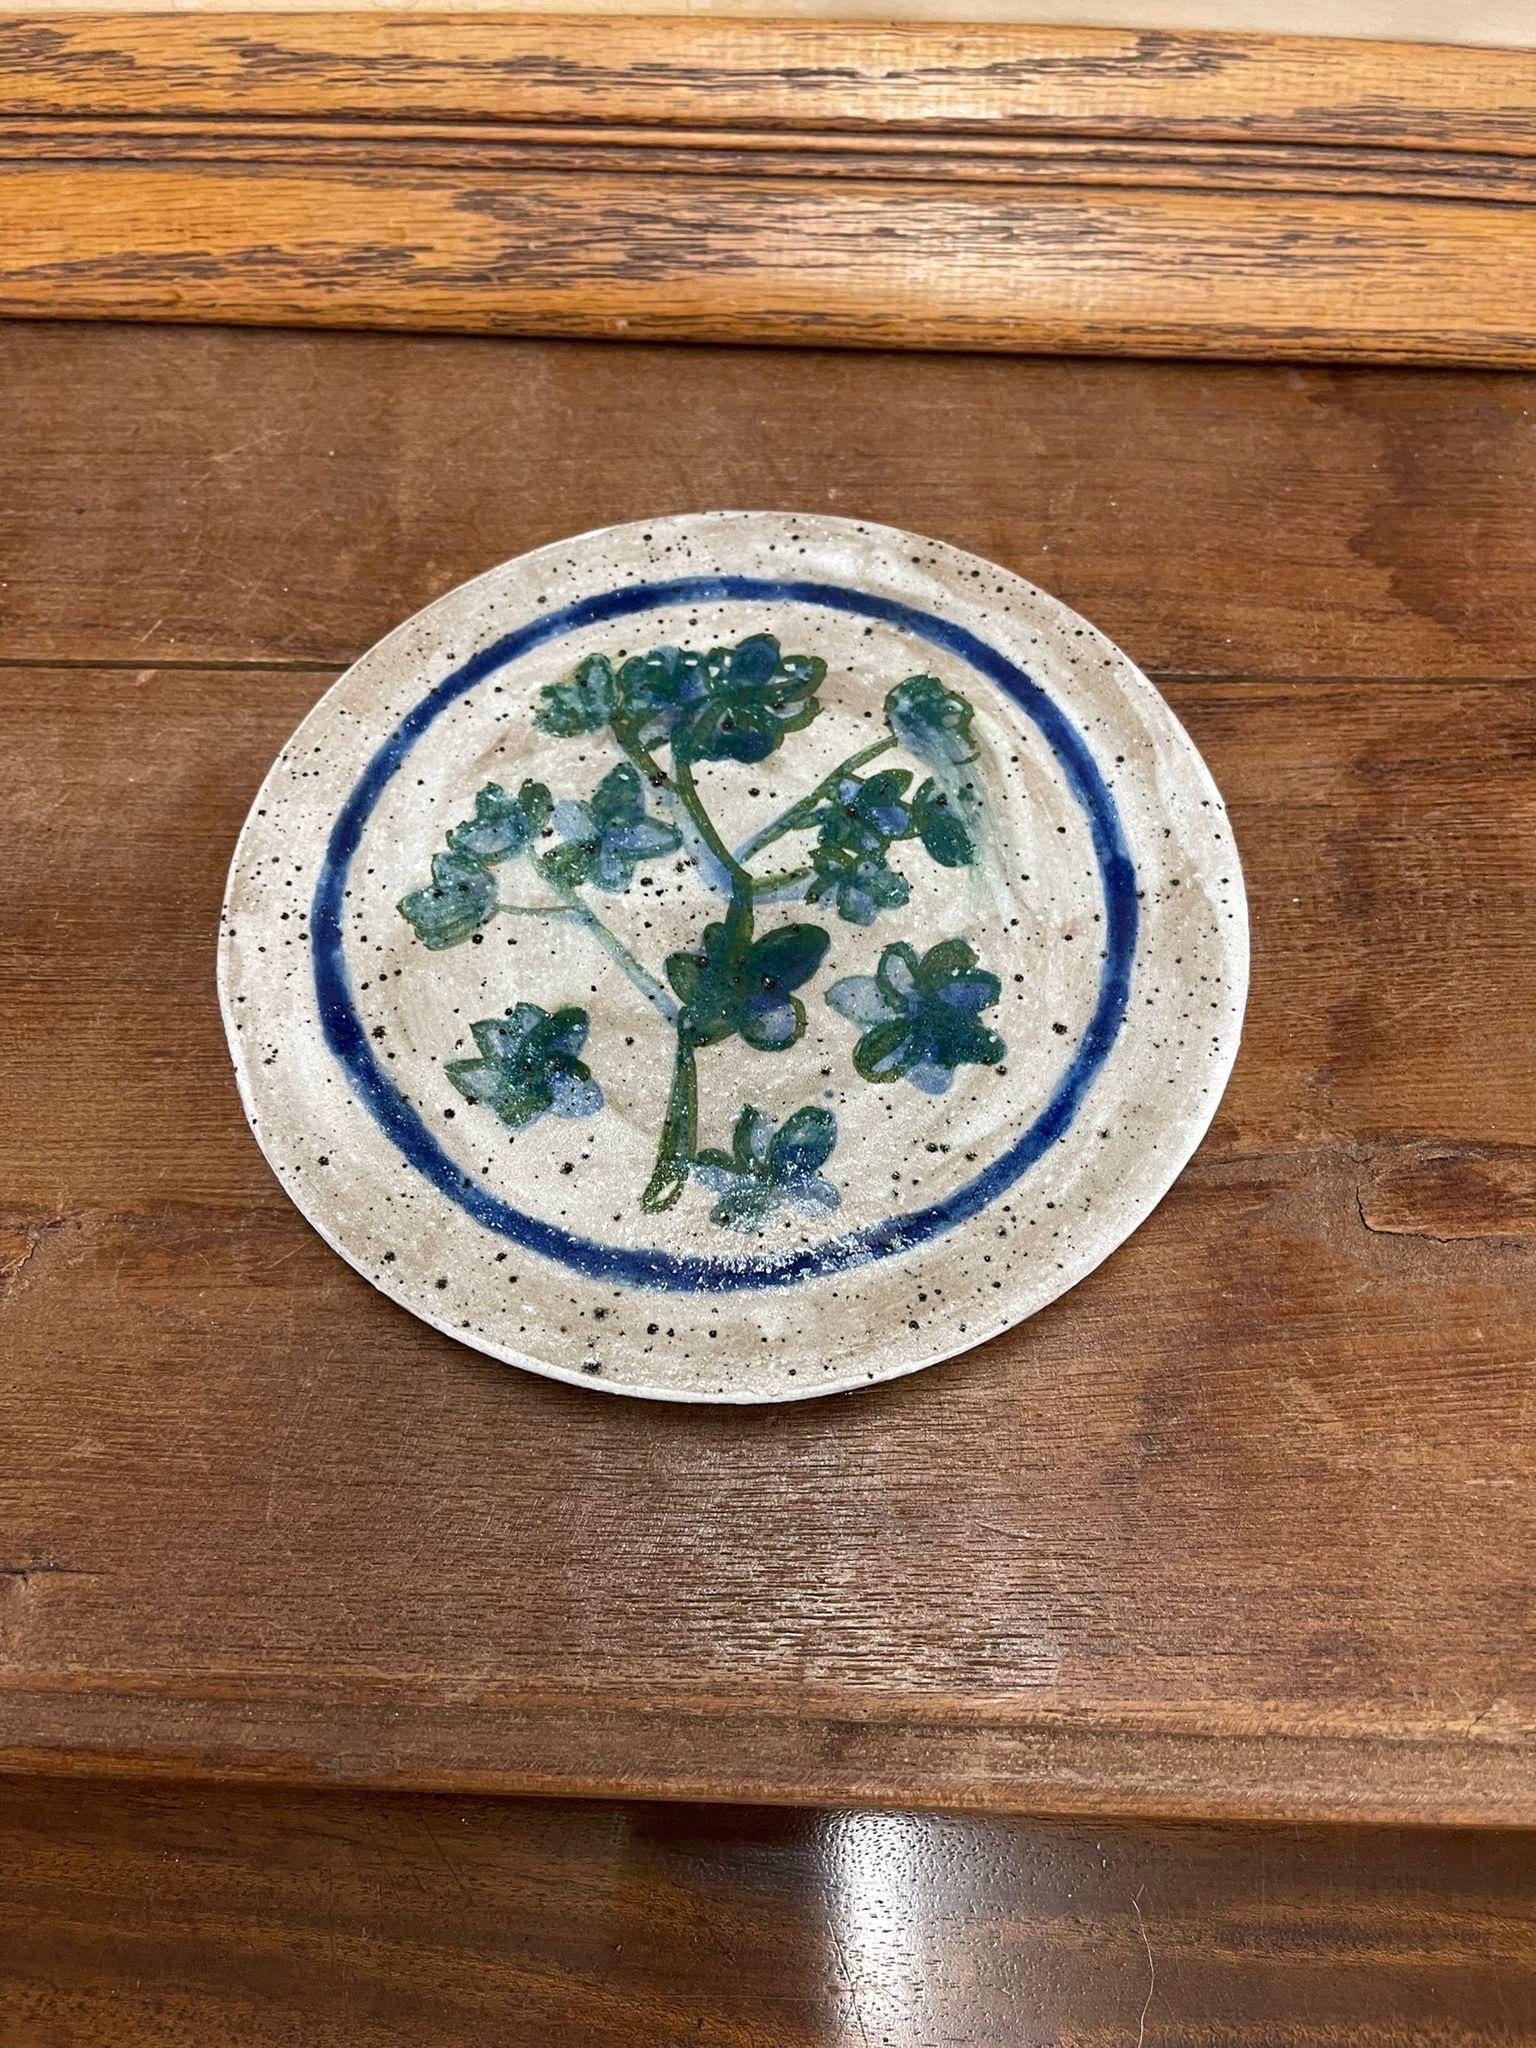 Cette assiette présente un magnifique motif floral bleu entouré d'un anneau bleu. Verre moucheté. Vintage Condition Consistent with Age as Pictured.

Dimensions. 7 Diamètre ; 0,50 H